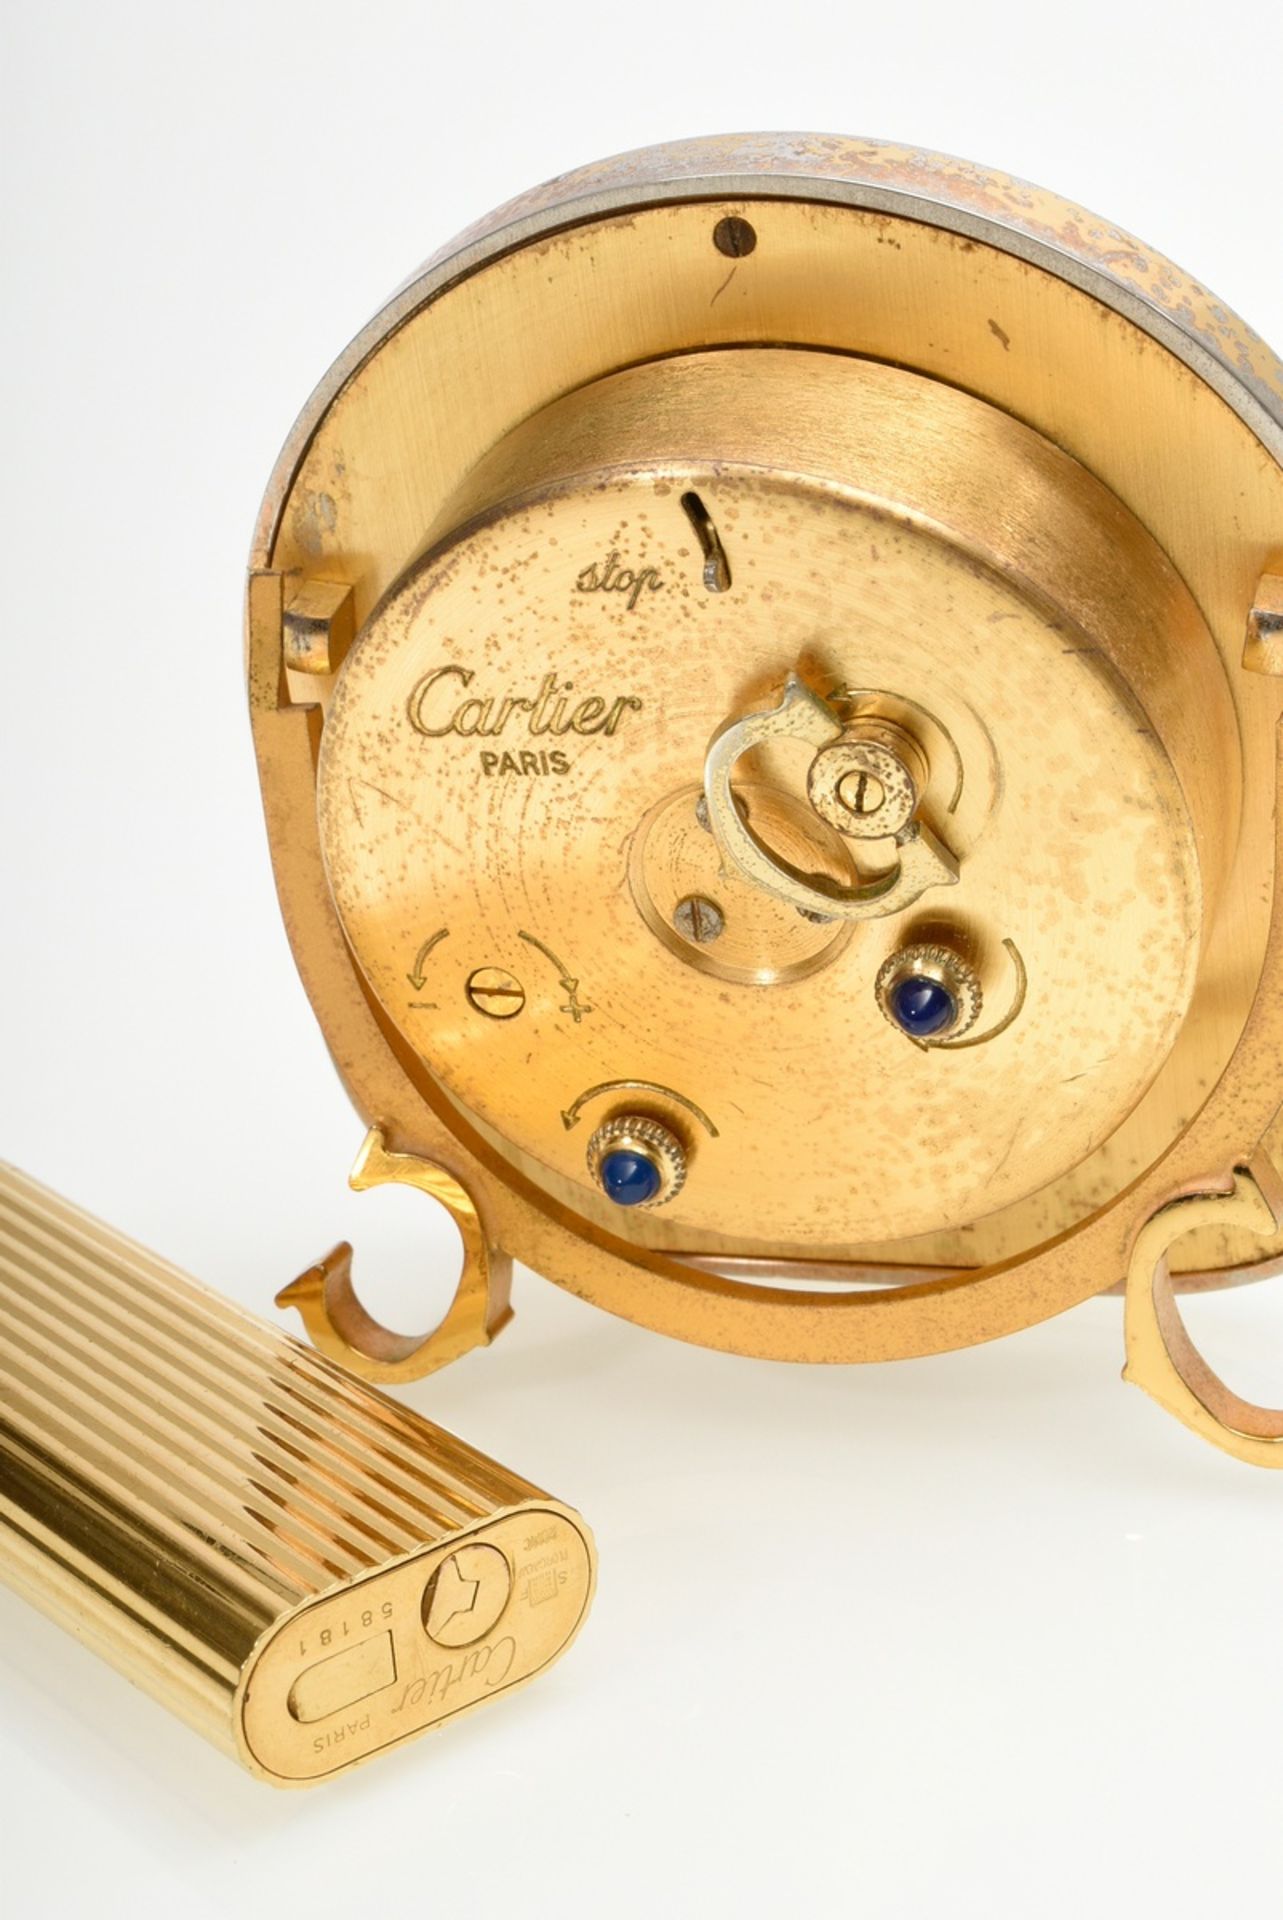 2 Diverse Teile Cartier: Reisewecker mit mechanischem Uhrwerk, braune Umrandung, Referenz Nr. 7504  - Bild 5 aus 5